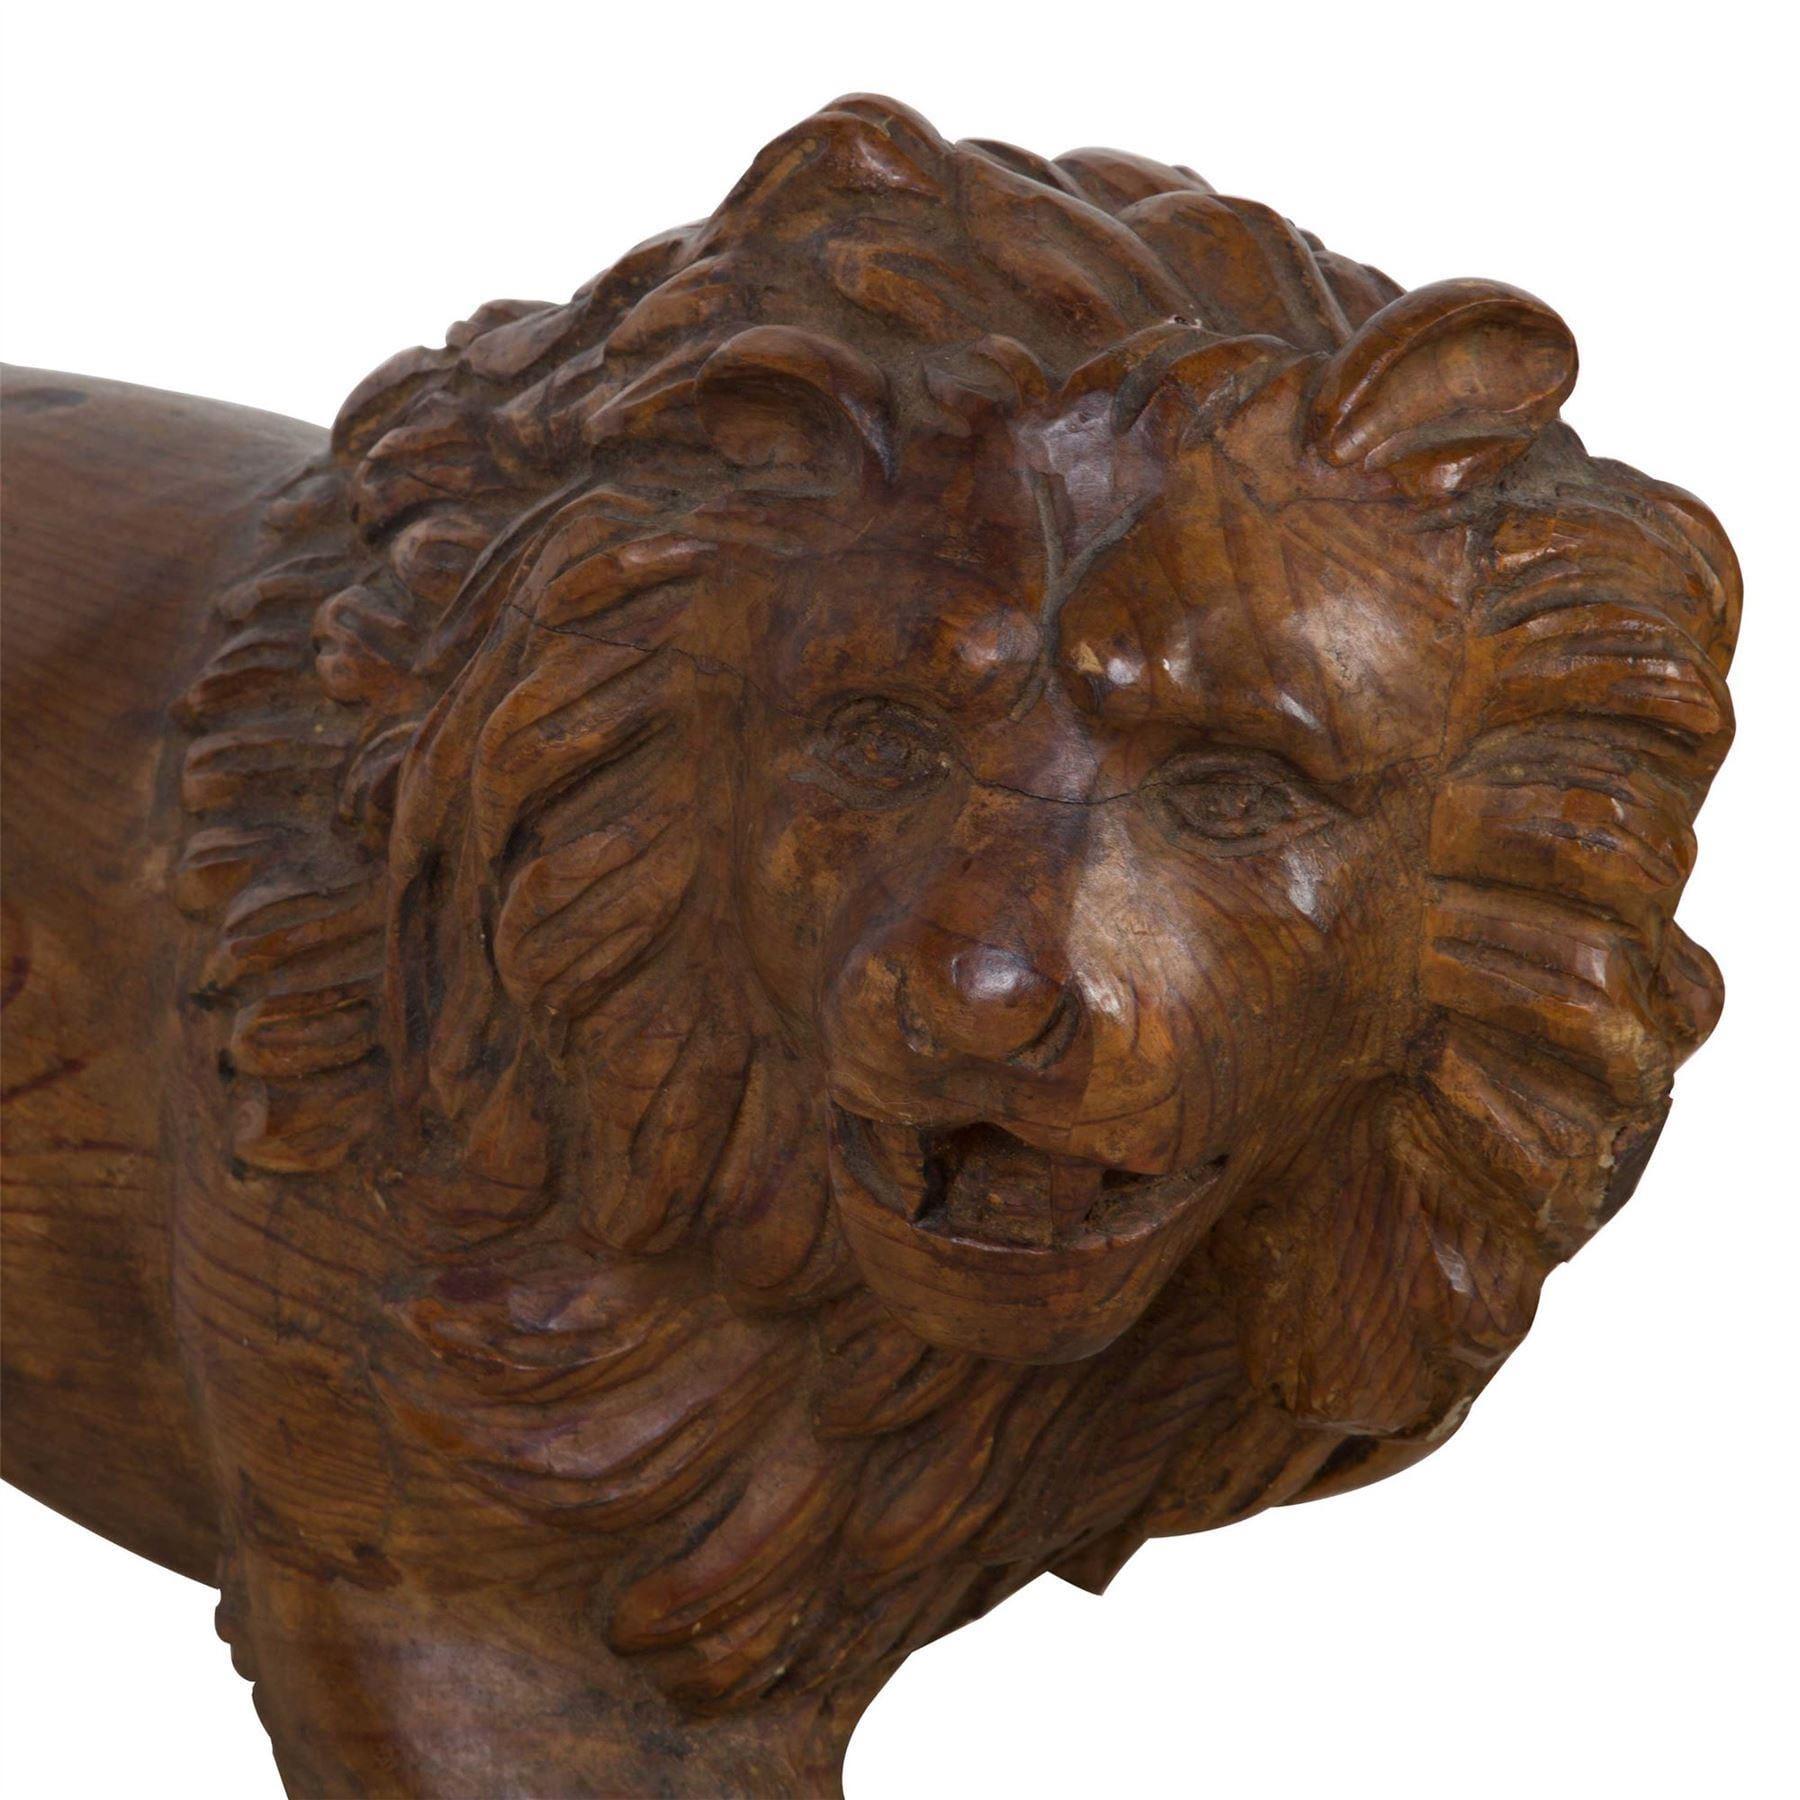 C19th Paar Medici Löwen in geschnitztem Holz, in entgegengesetzter Haltung mit Köpfen zu sinister und dexter gedreht, mit einer Pfote auf einer Kugel.  Circa 1830.

30 3/4